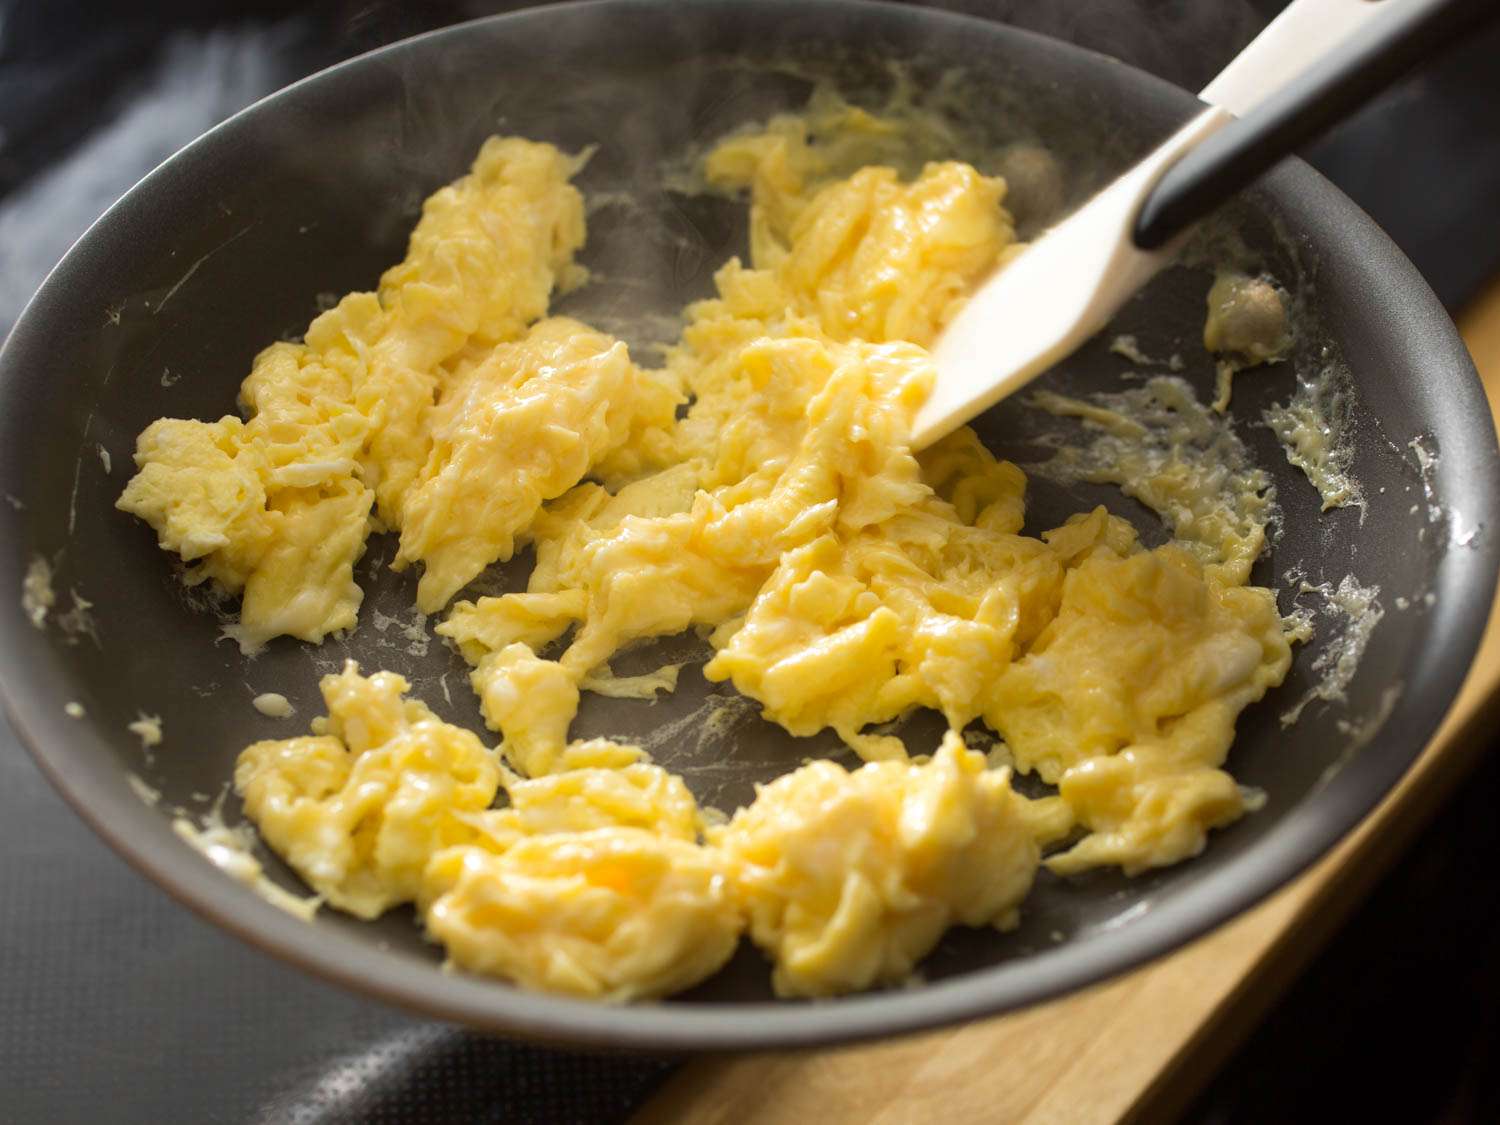 搅拌几乎完成的炒鸡蛋和大而蓬松的凝乳。